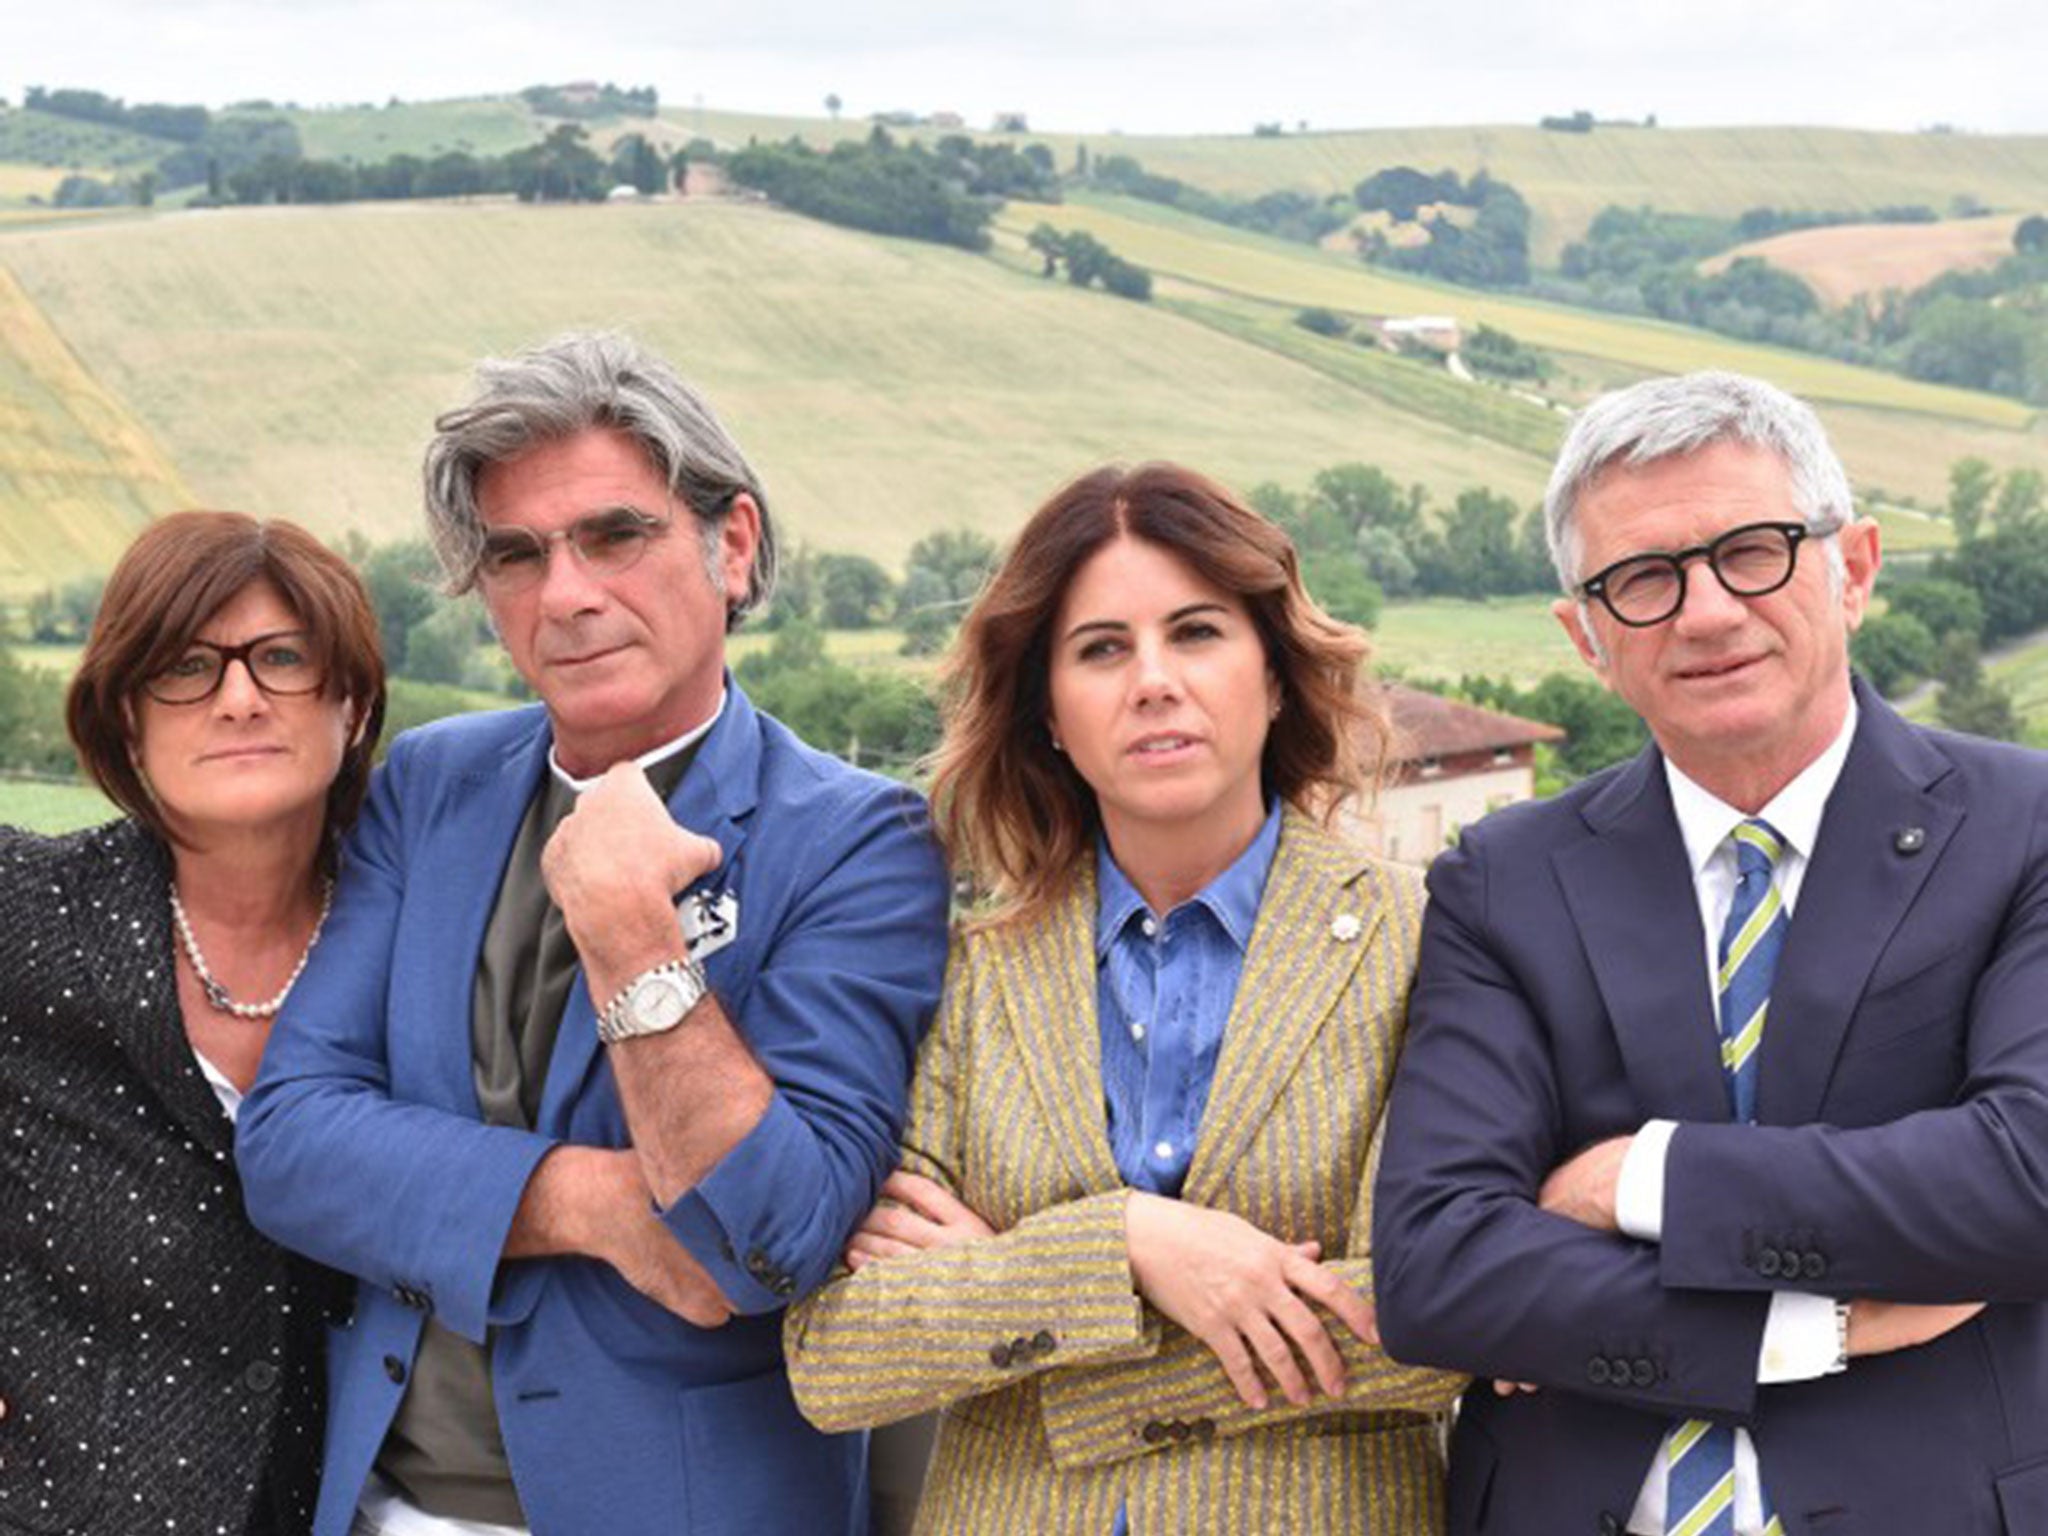 Luigi Lardini en familie in Filottrano, Italië